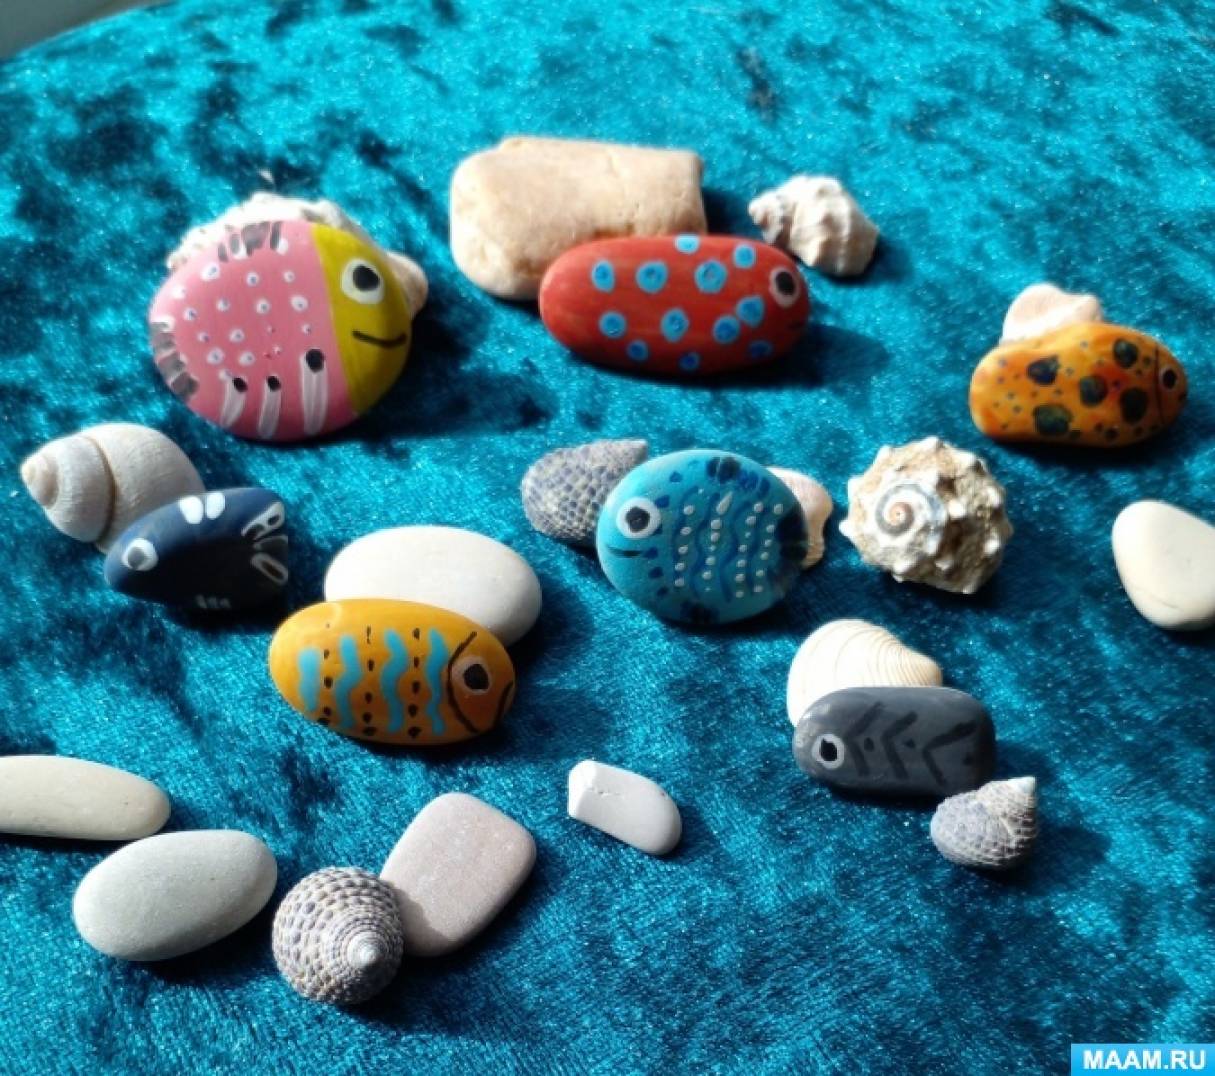 Расписные камни: оригинальный декор и забава для детей